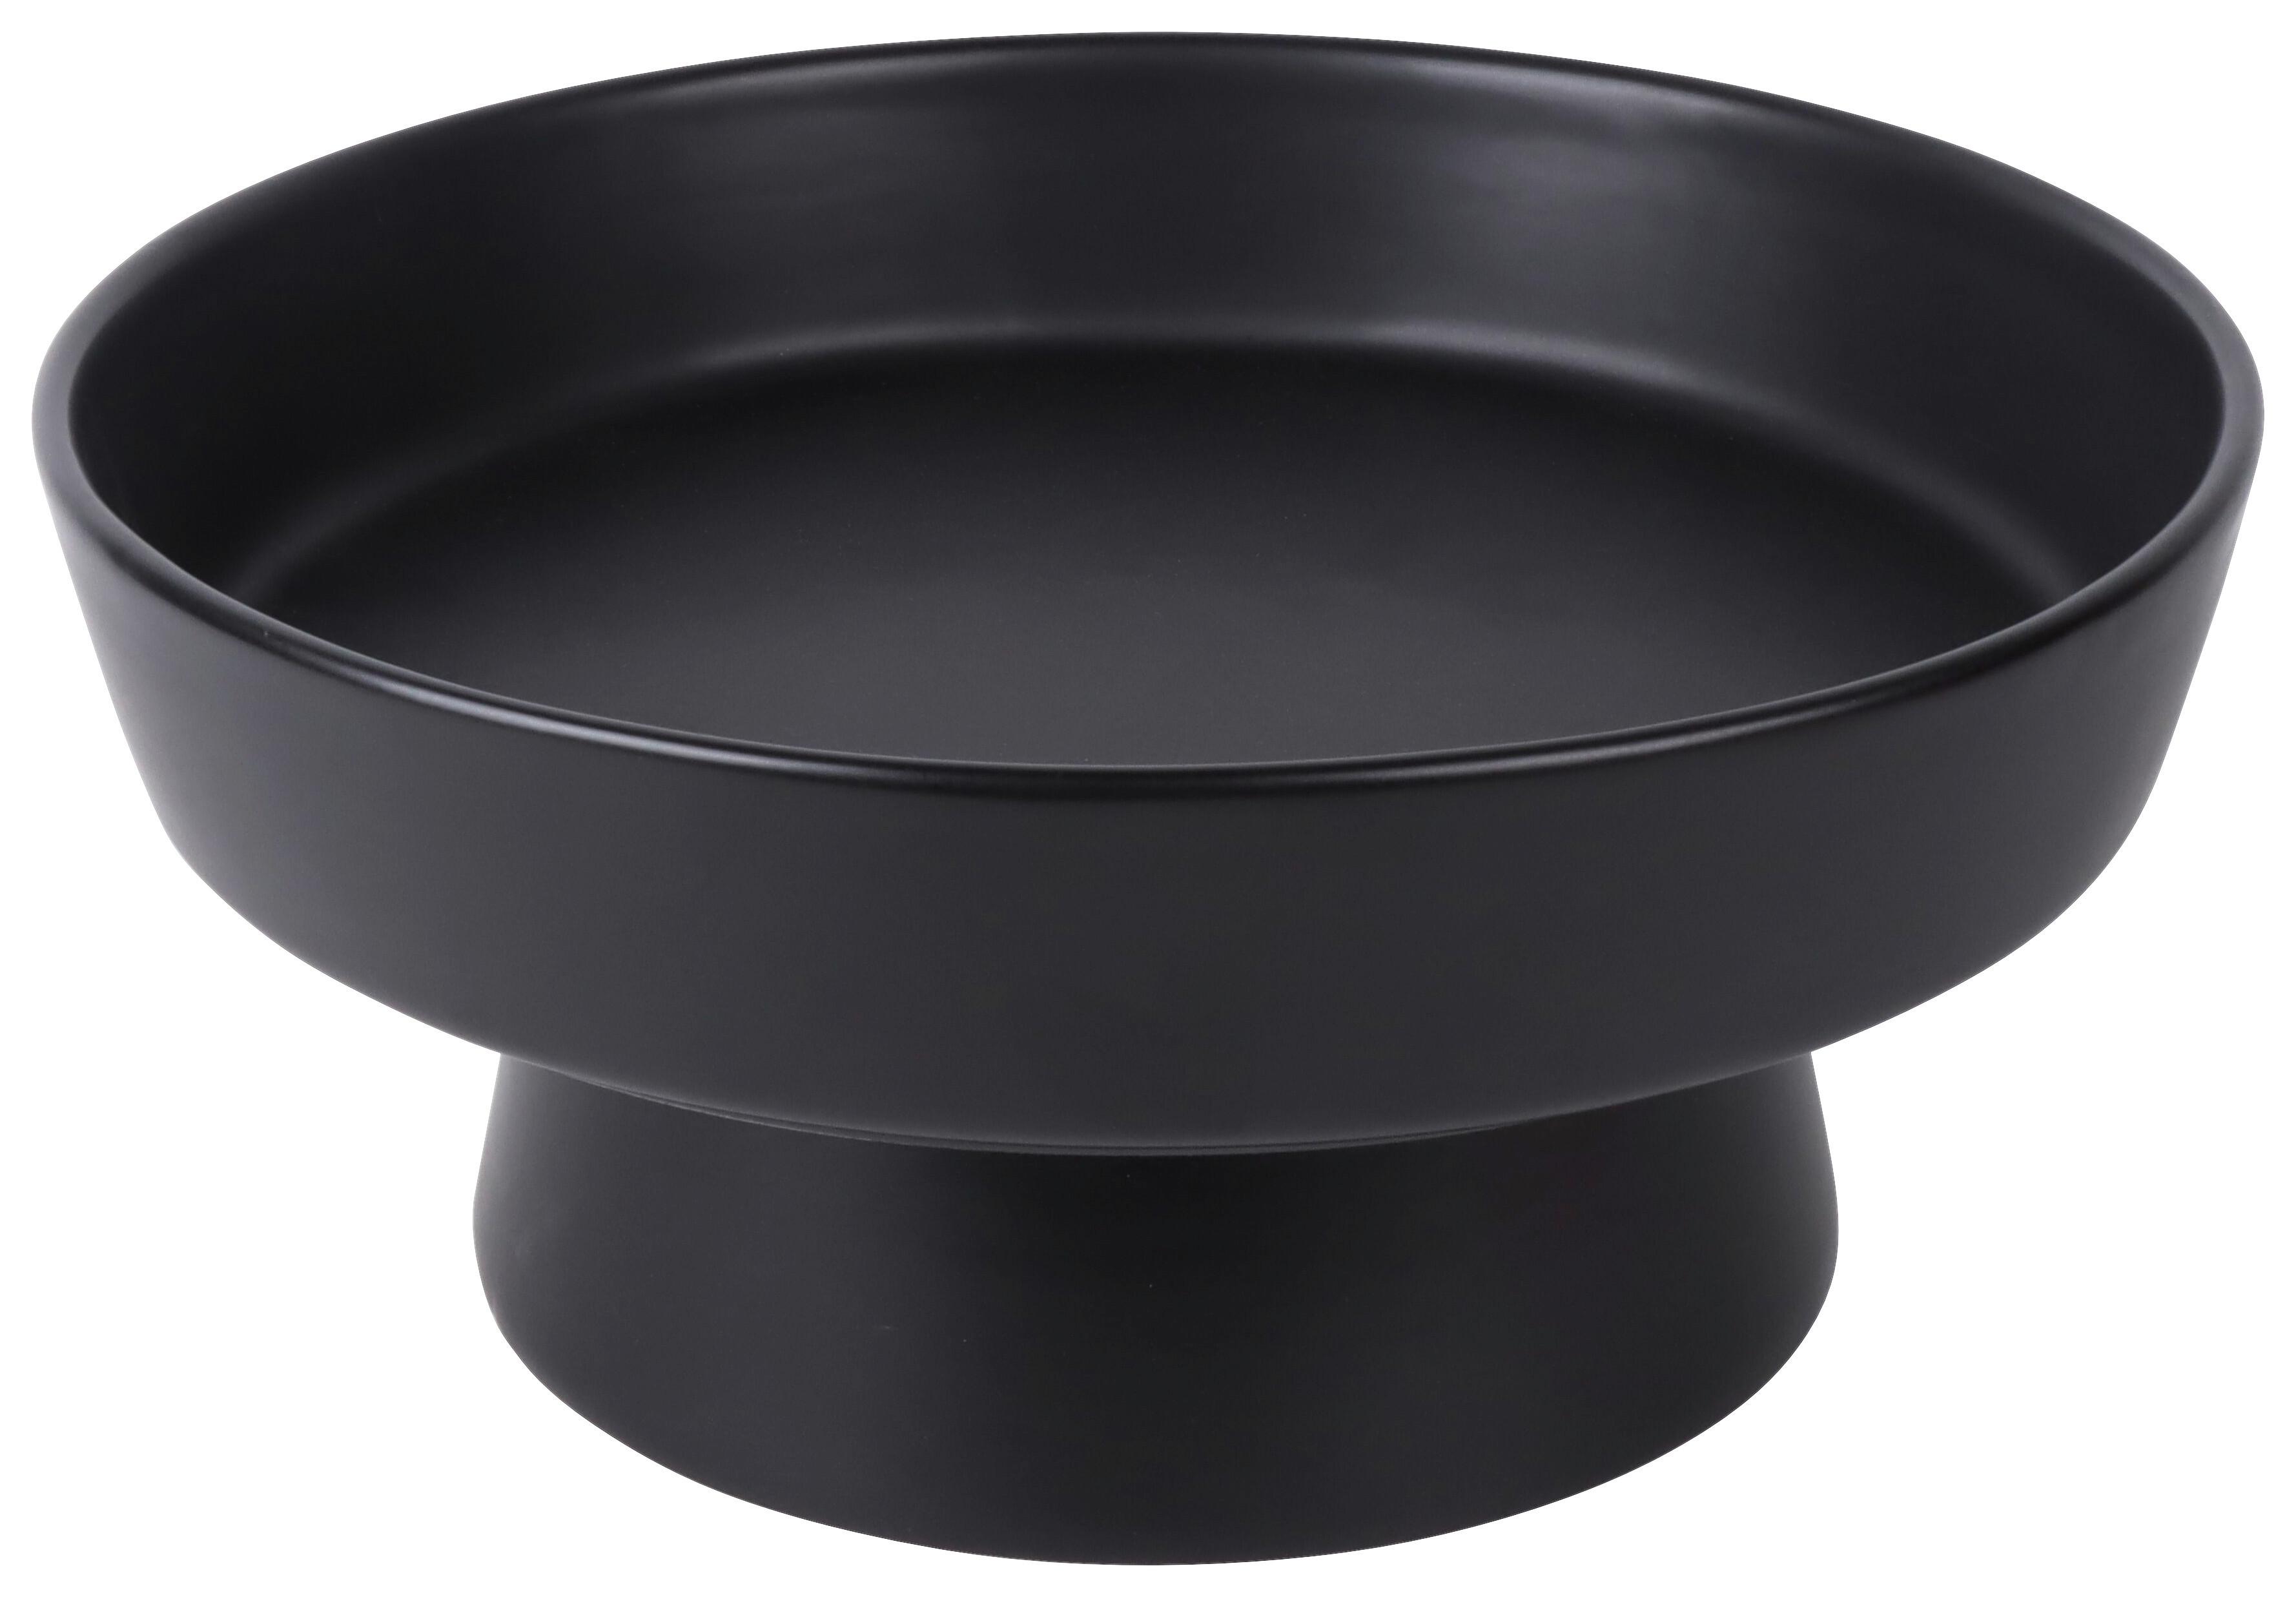 Dekorační Miska Elvado - černá, Moderní, keramika (26,5/12cm) - Modern Living